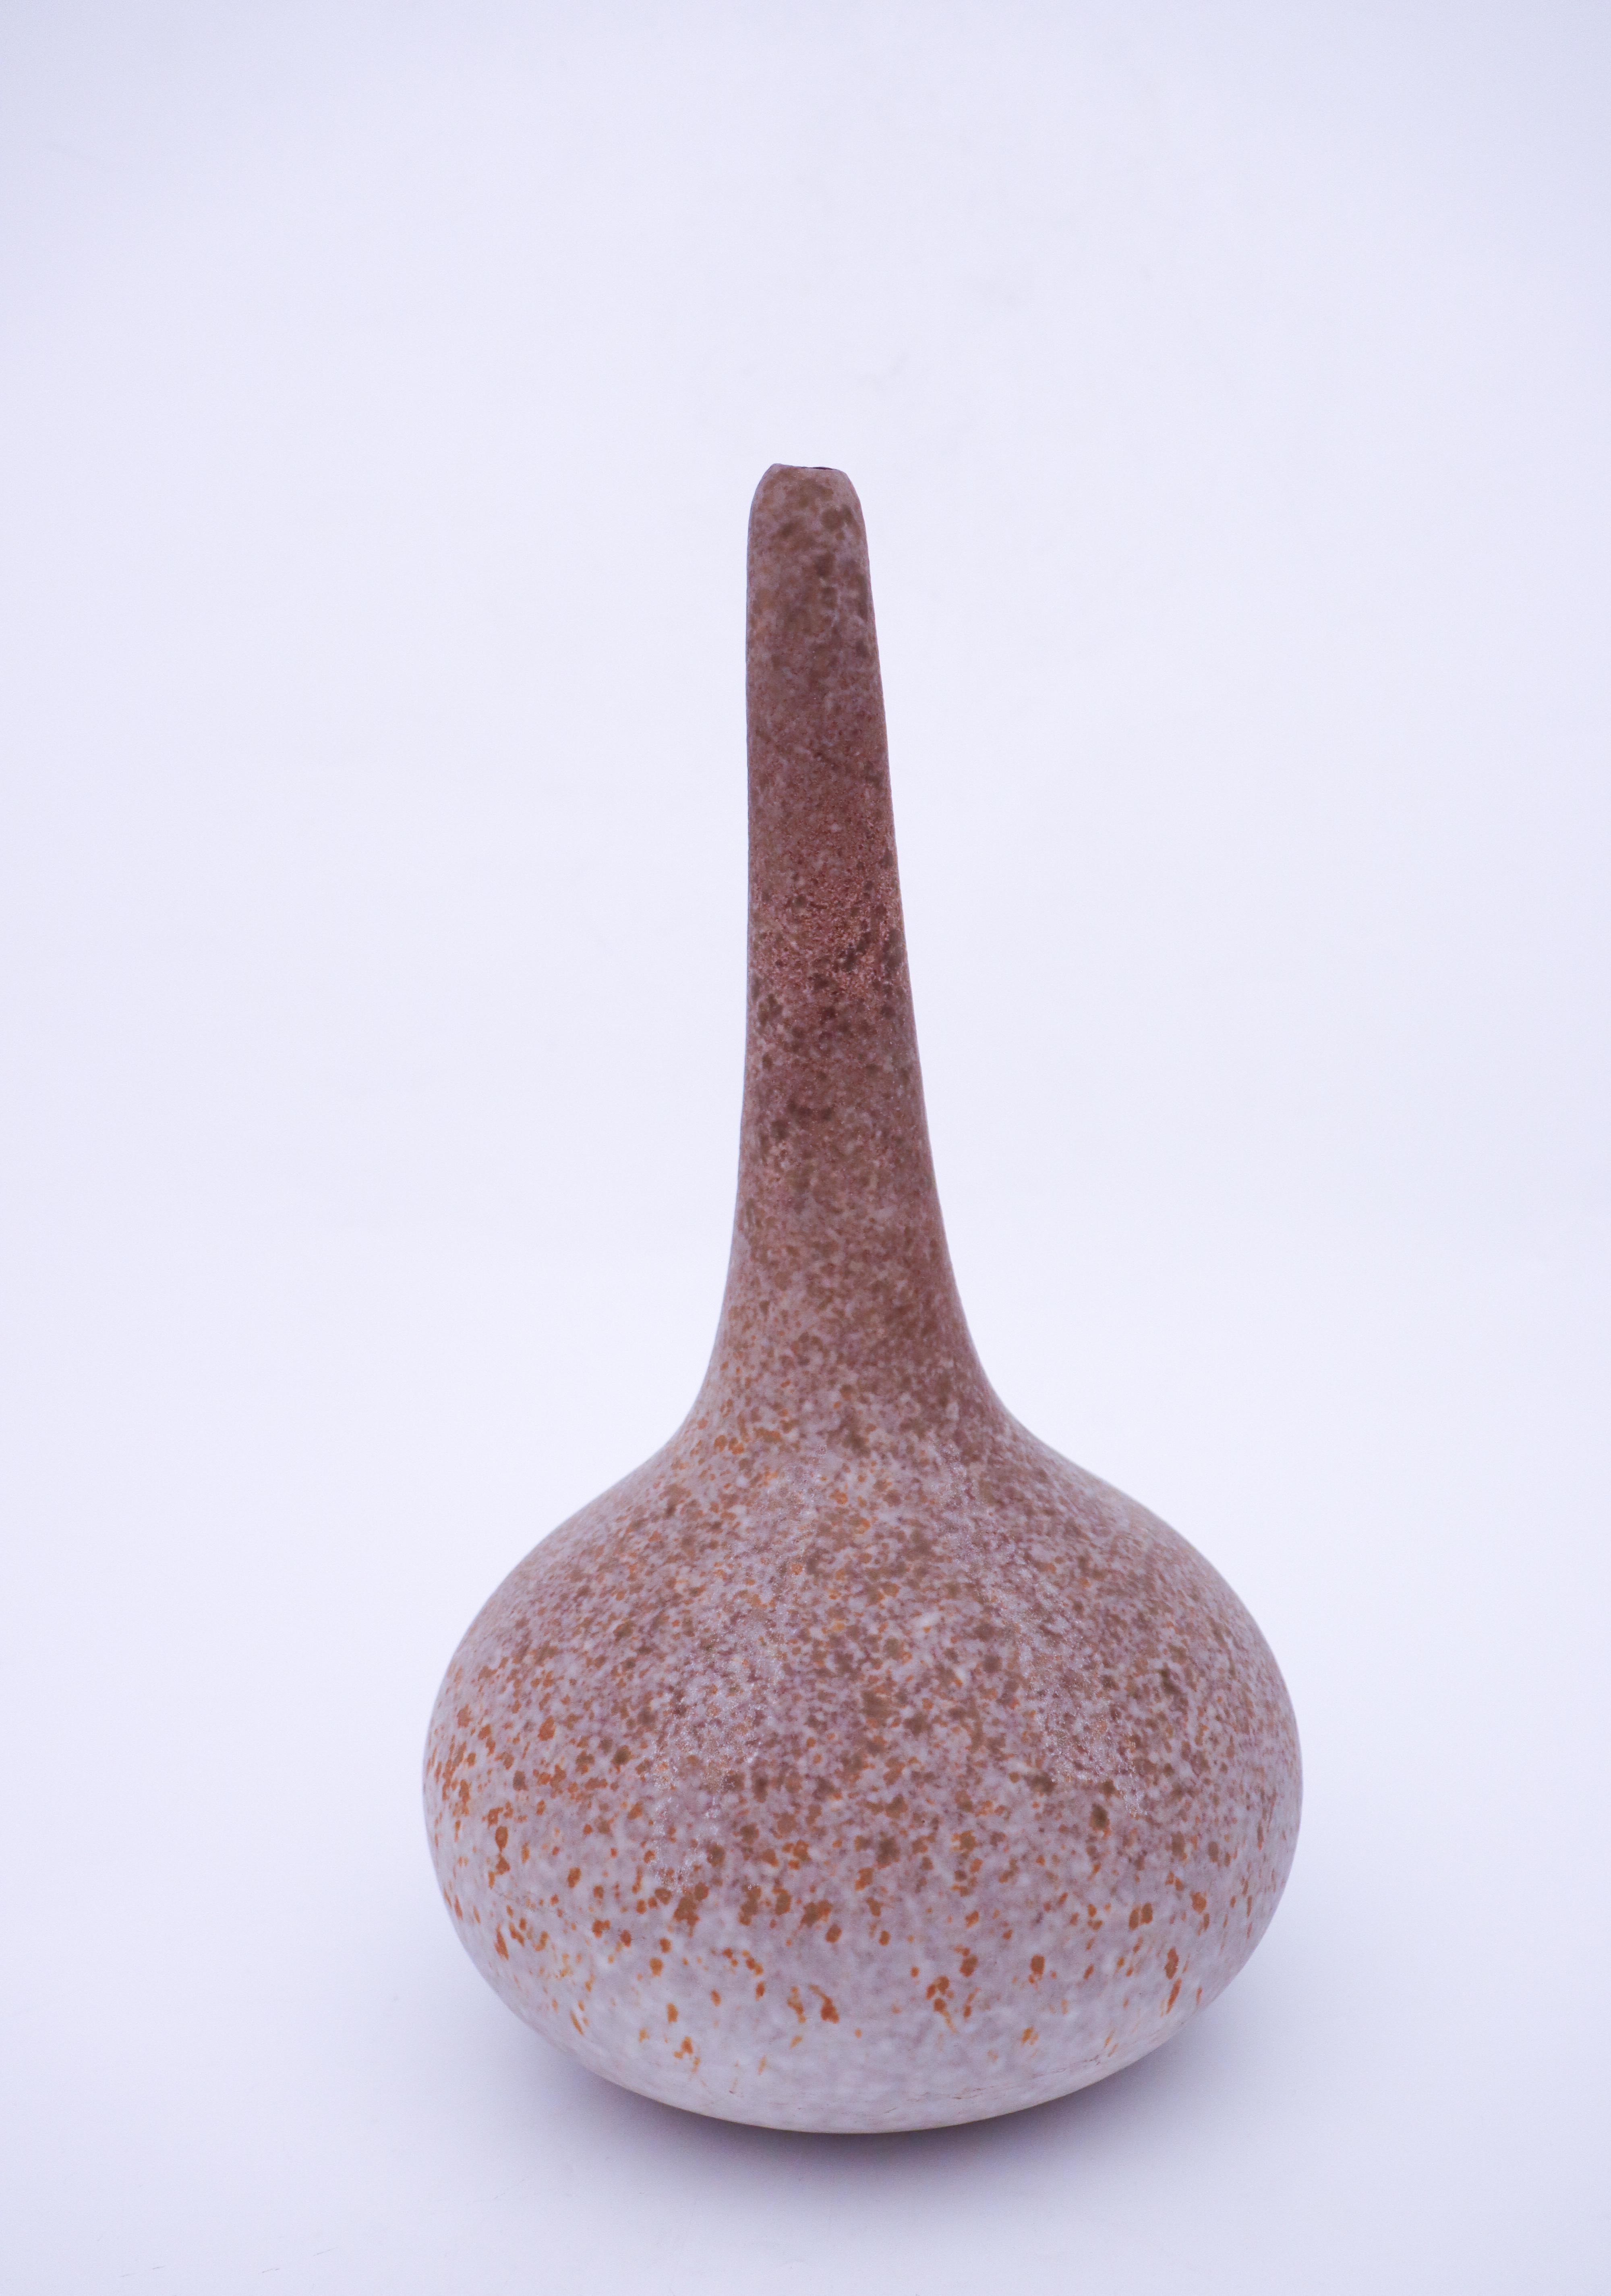 Eine schöne Vase aus Steingut, entworfen von Paul Hoff bei Gustavsberg. Es handelt sich eher um eine Skulptur als um eine Vase, aber sie hat oben ein kleines Loch. Die Vase ist 37 cm (14,8